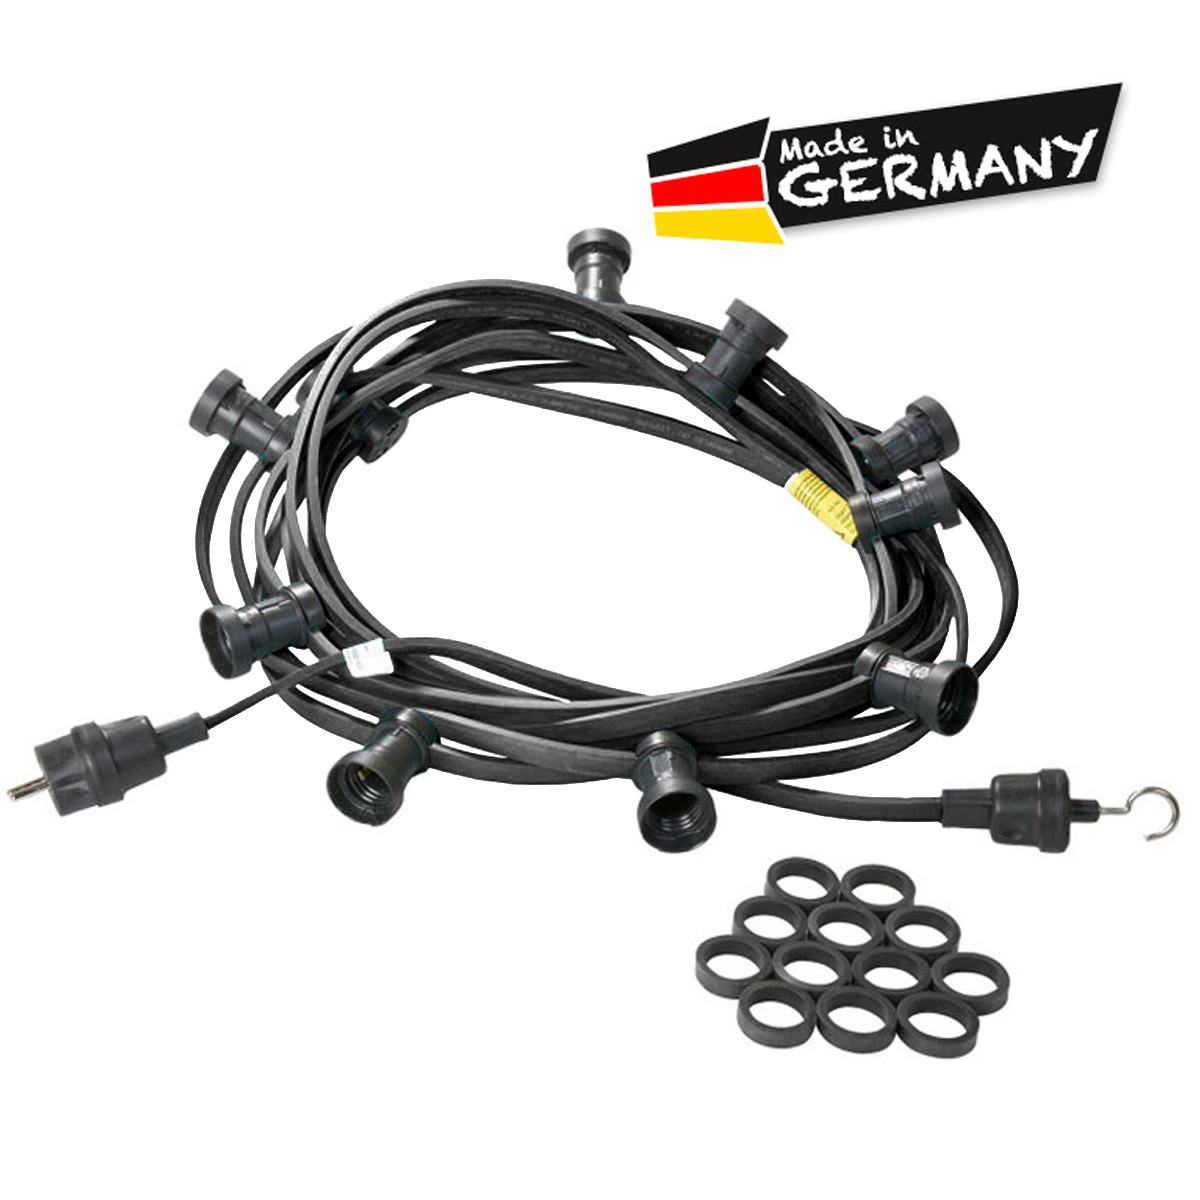 Illu-/Partylichterkette schwarz 40m | Außenlichterkette | Made in Germany | 40 x E27 Schraubfassung